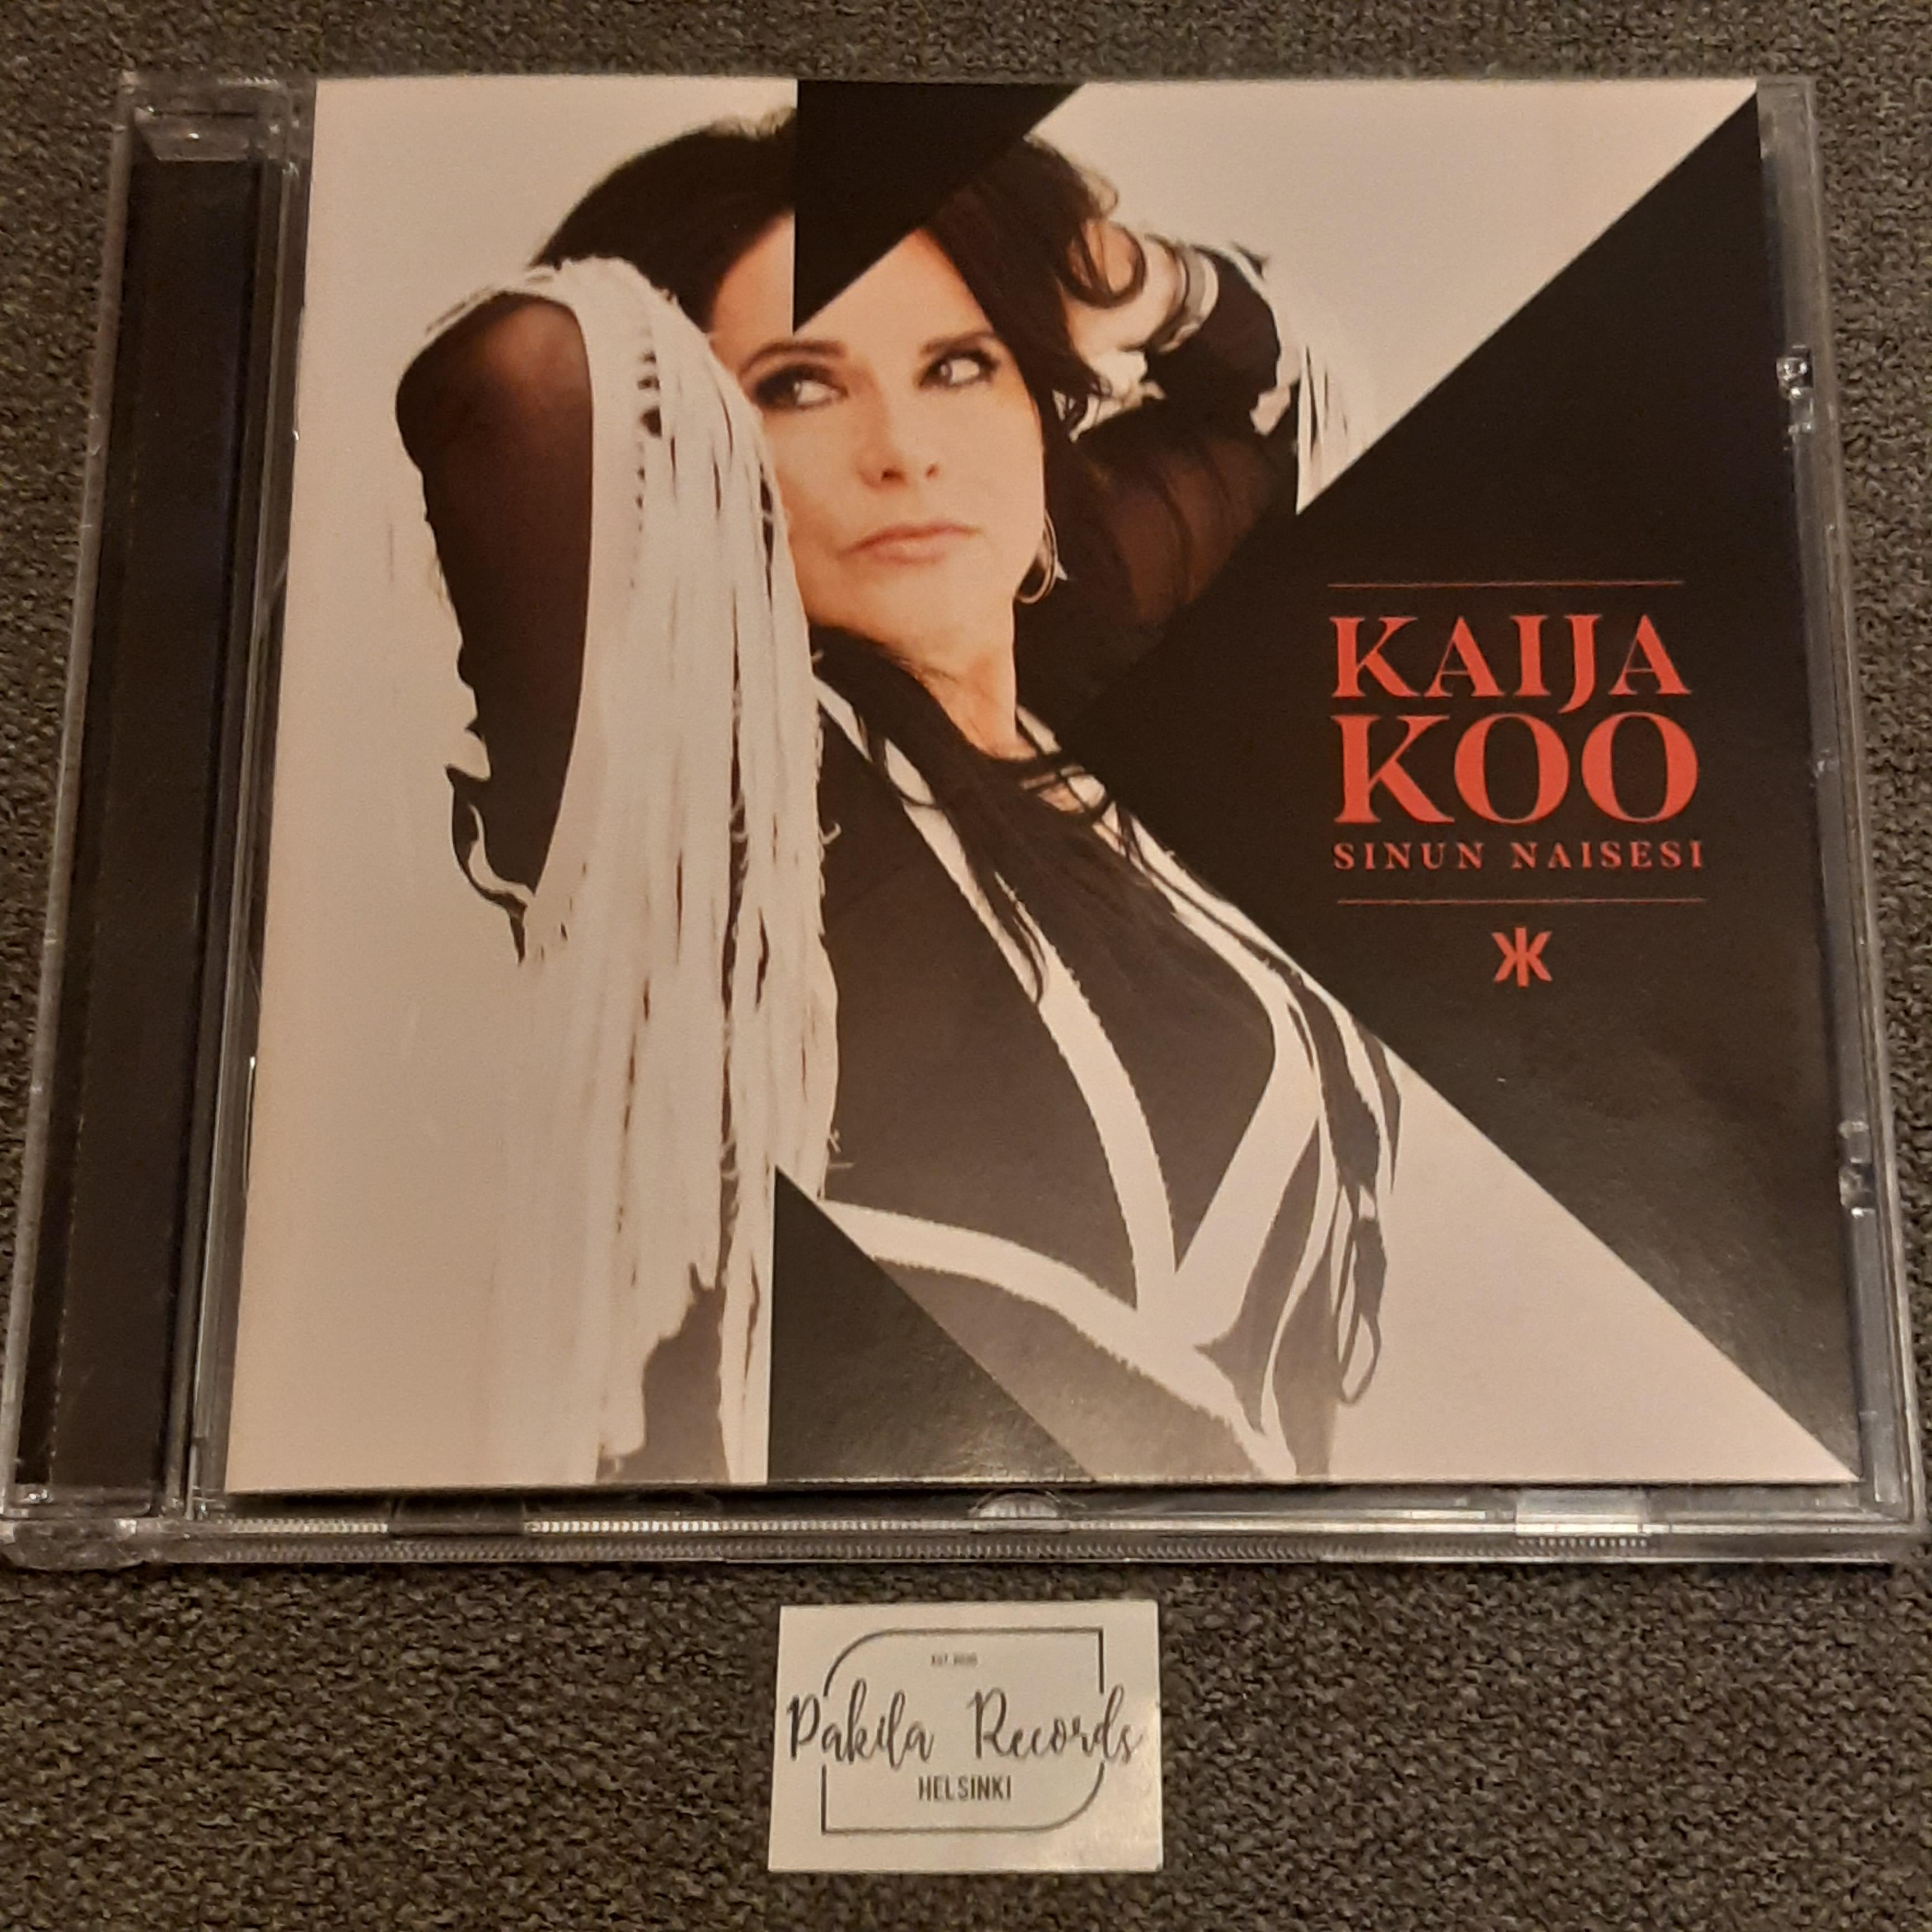 Kaija Koo - Sinun naisesi - CD (käytetty)